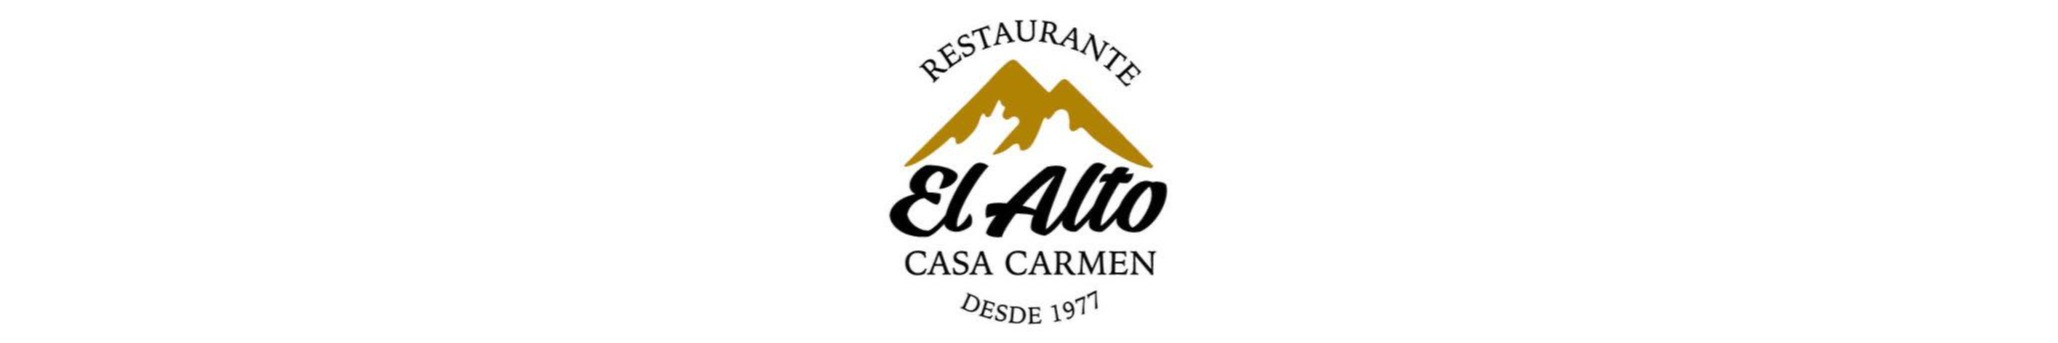 Restaurante El Alto, Casa Carmen